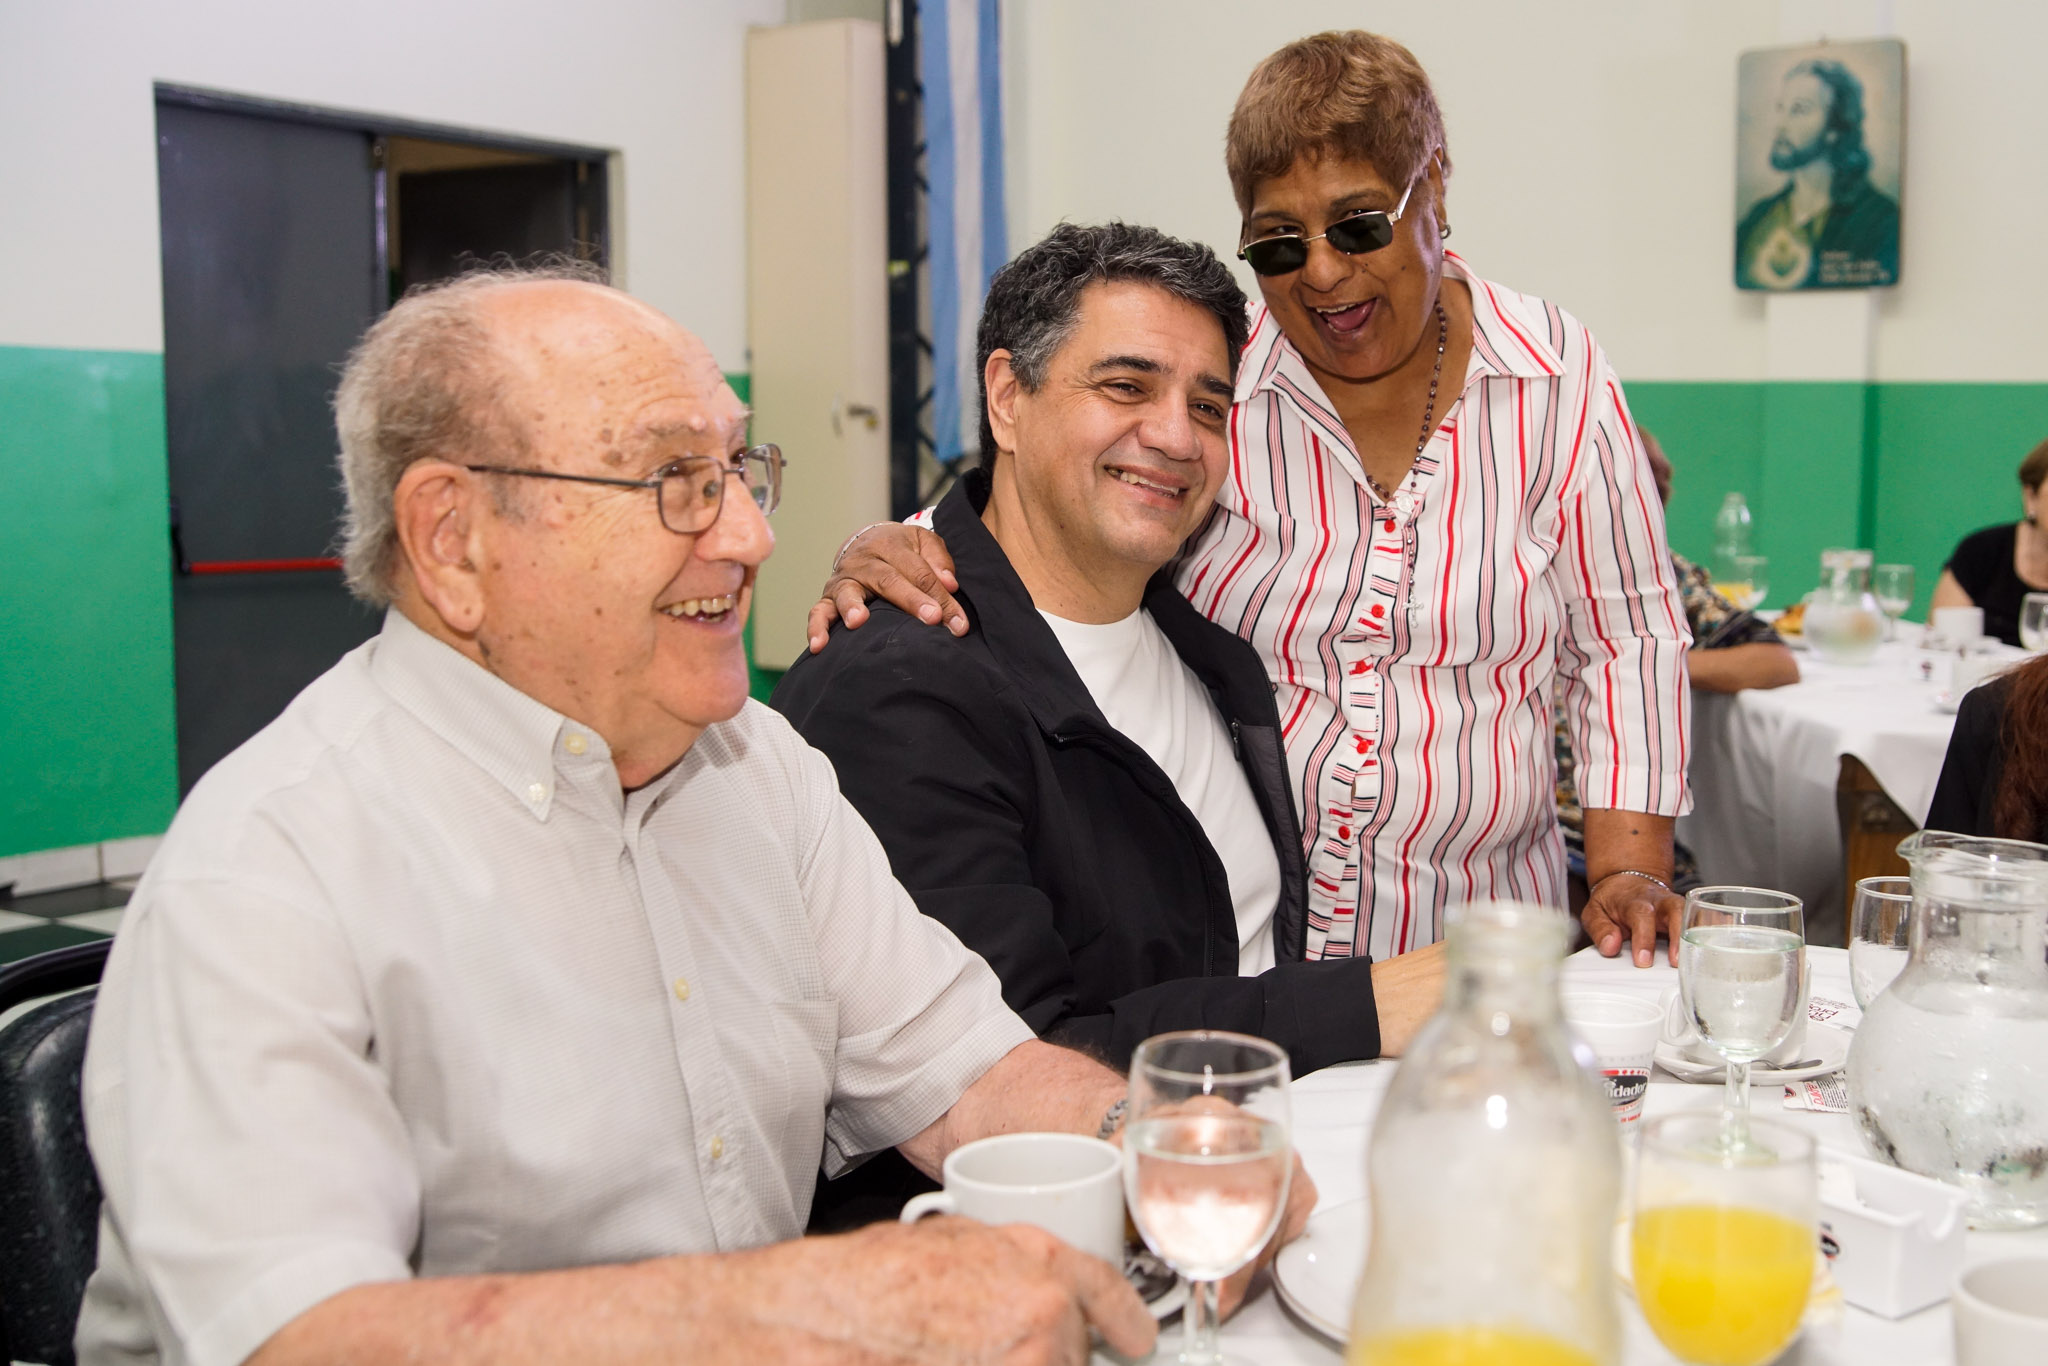  Jorge Macri anunció una ayuda económica a miles de jubilados y personas con discapacidad